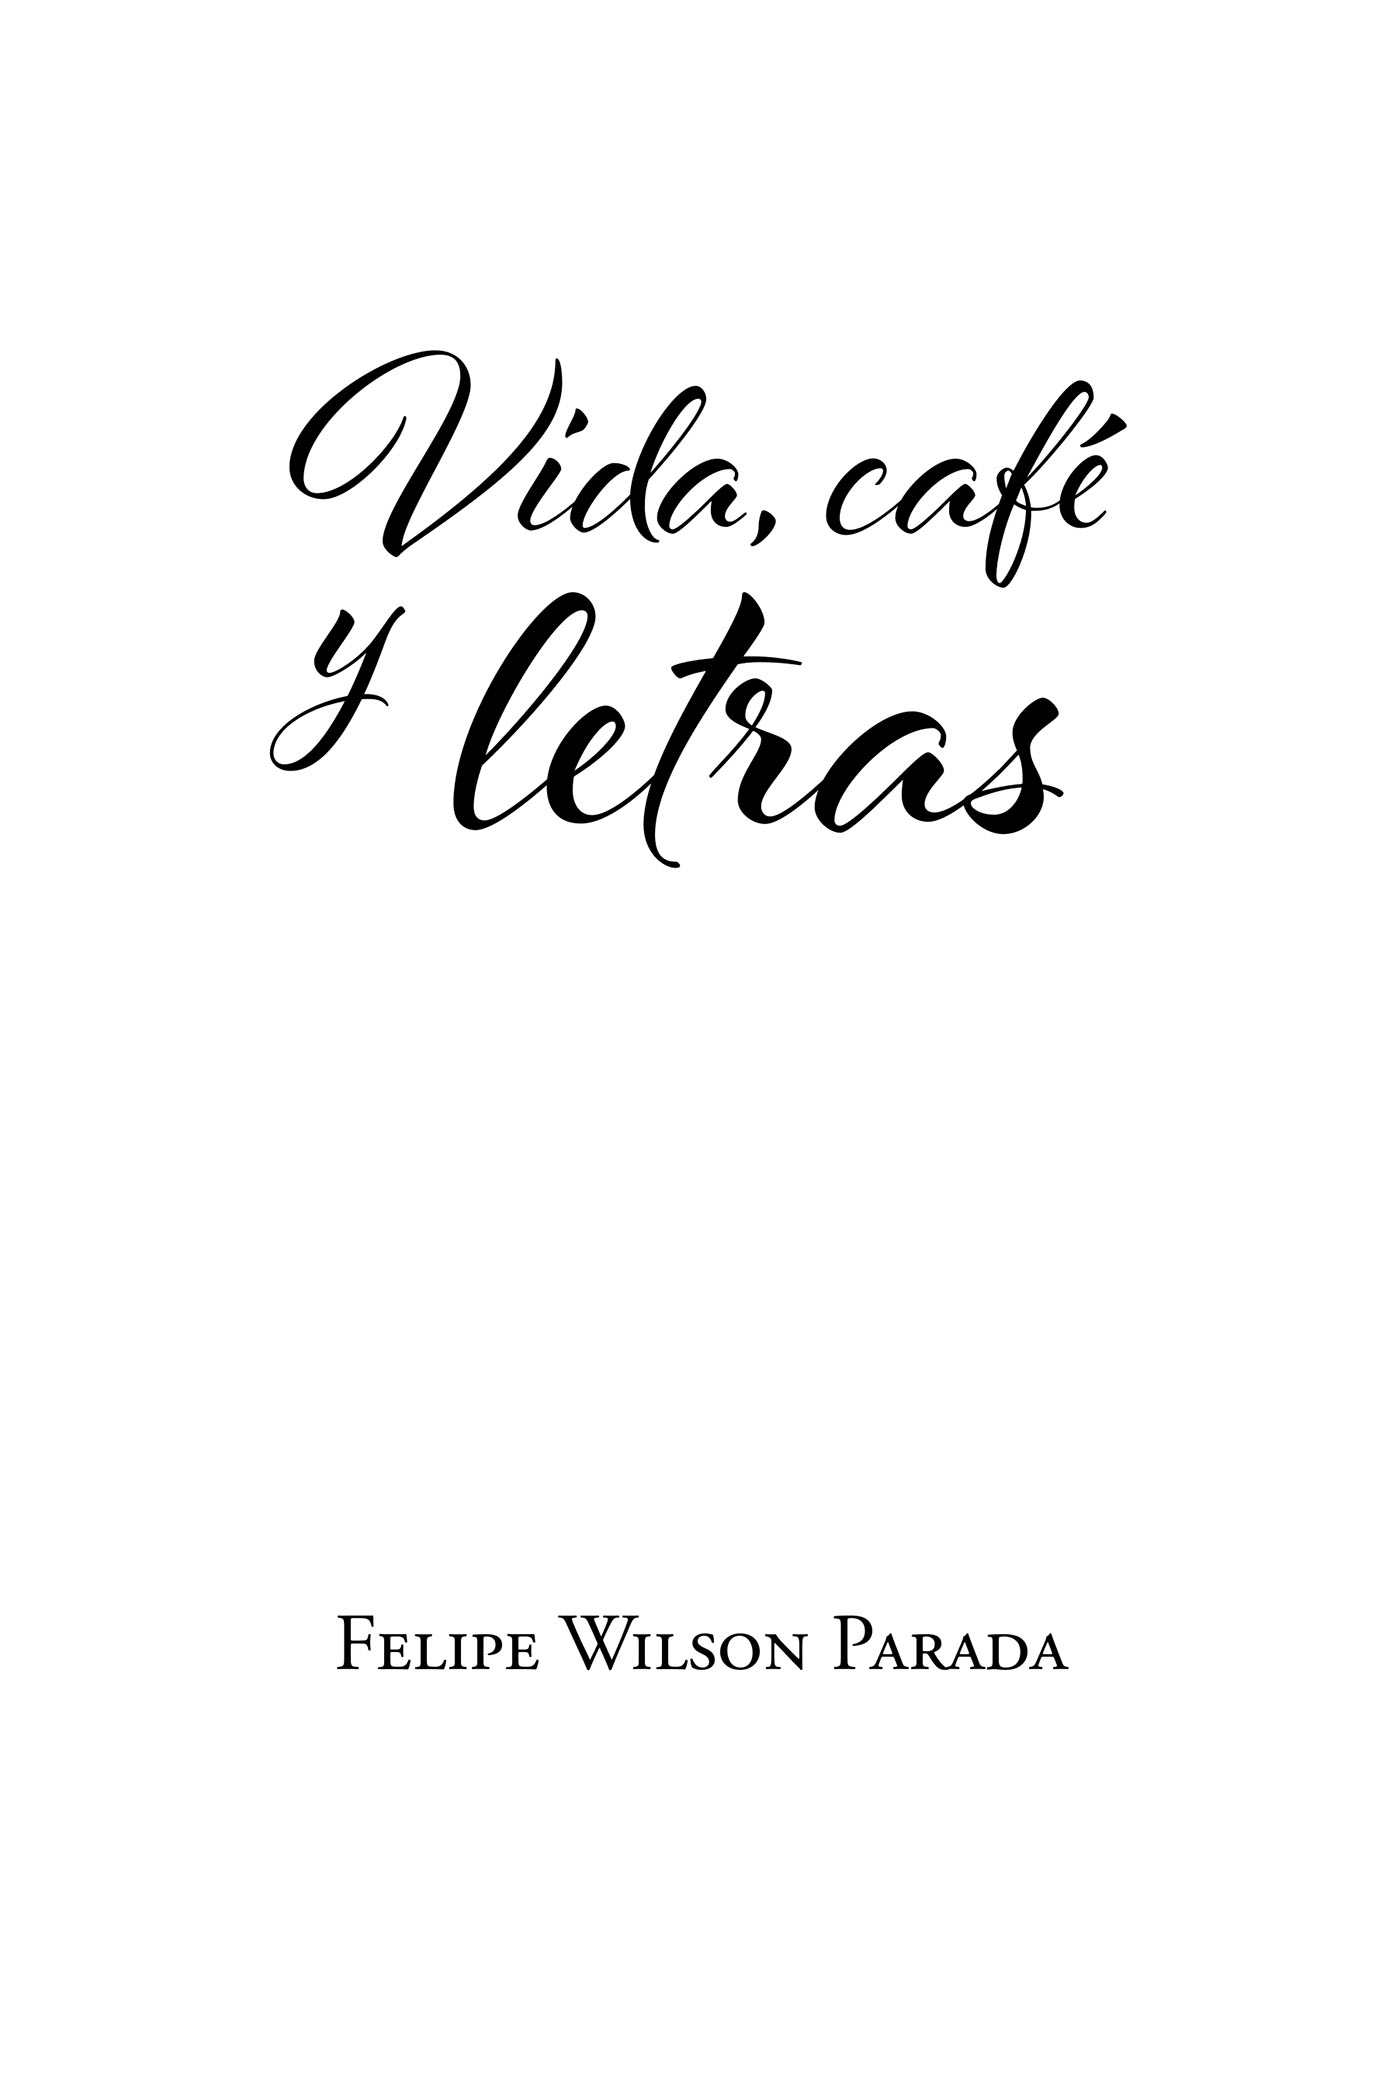 Vida, cafÃ© y letras Cover Image